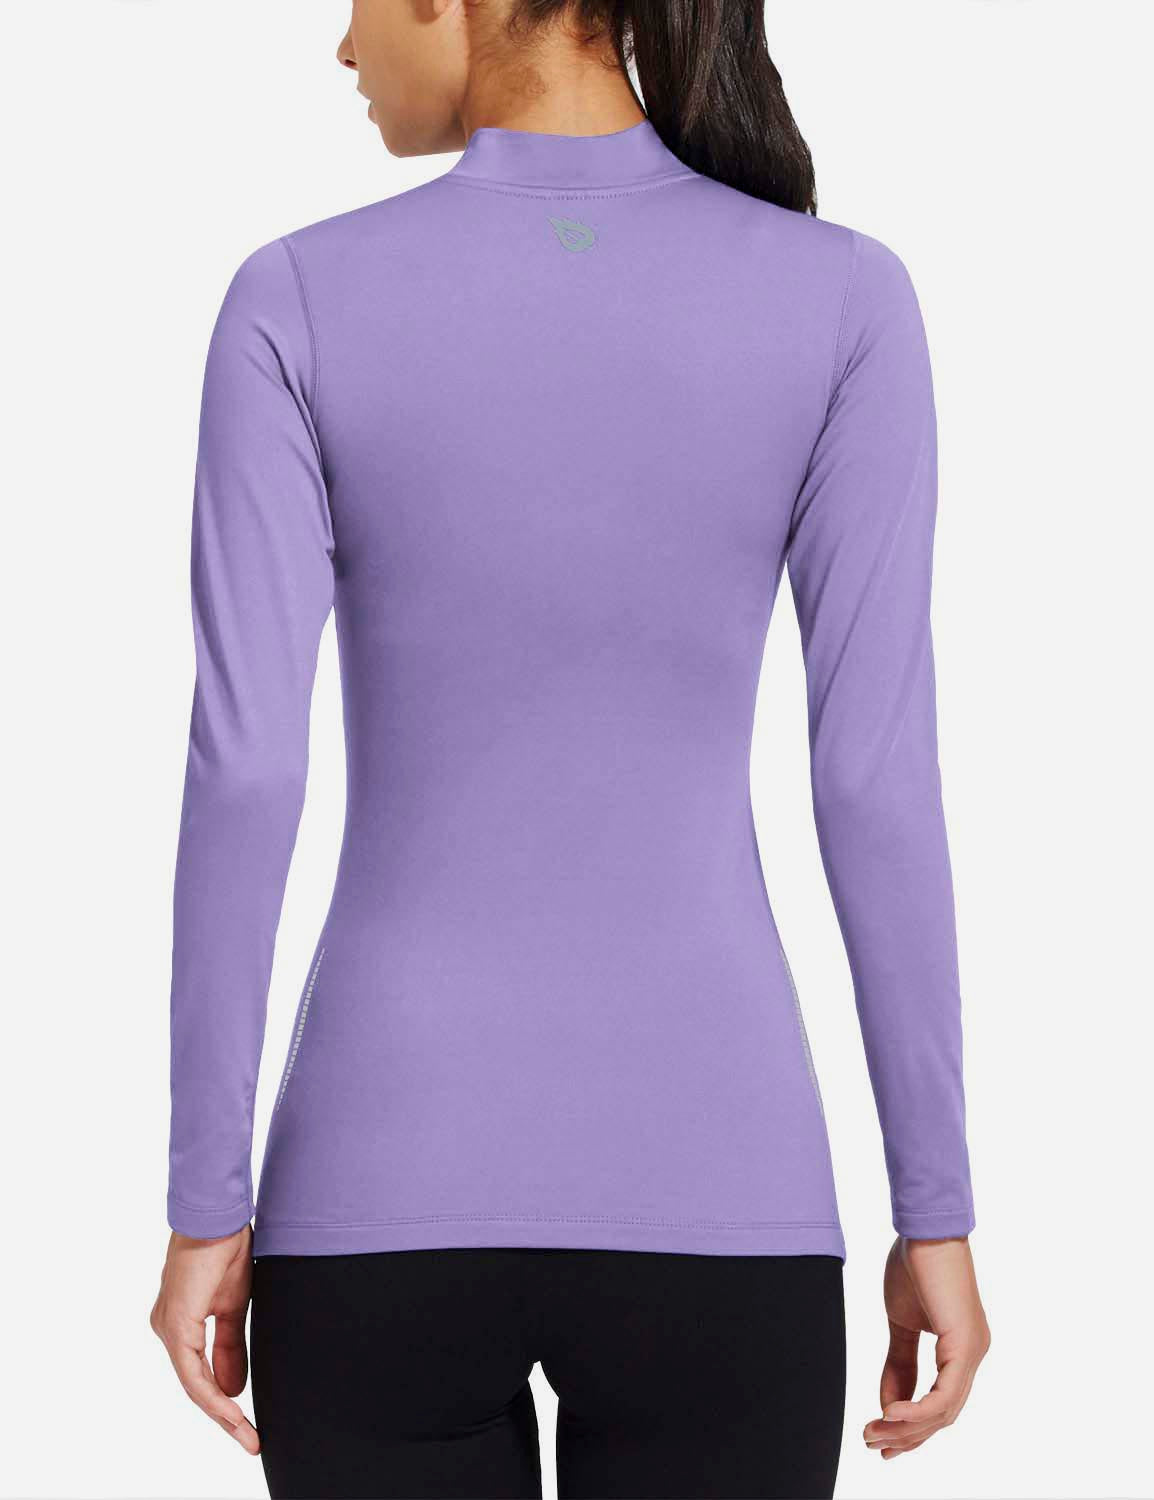 Baleaf Women's Basic Compression Mock-Neck Long Sleeved Shirt abd166 Purple Back